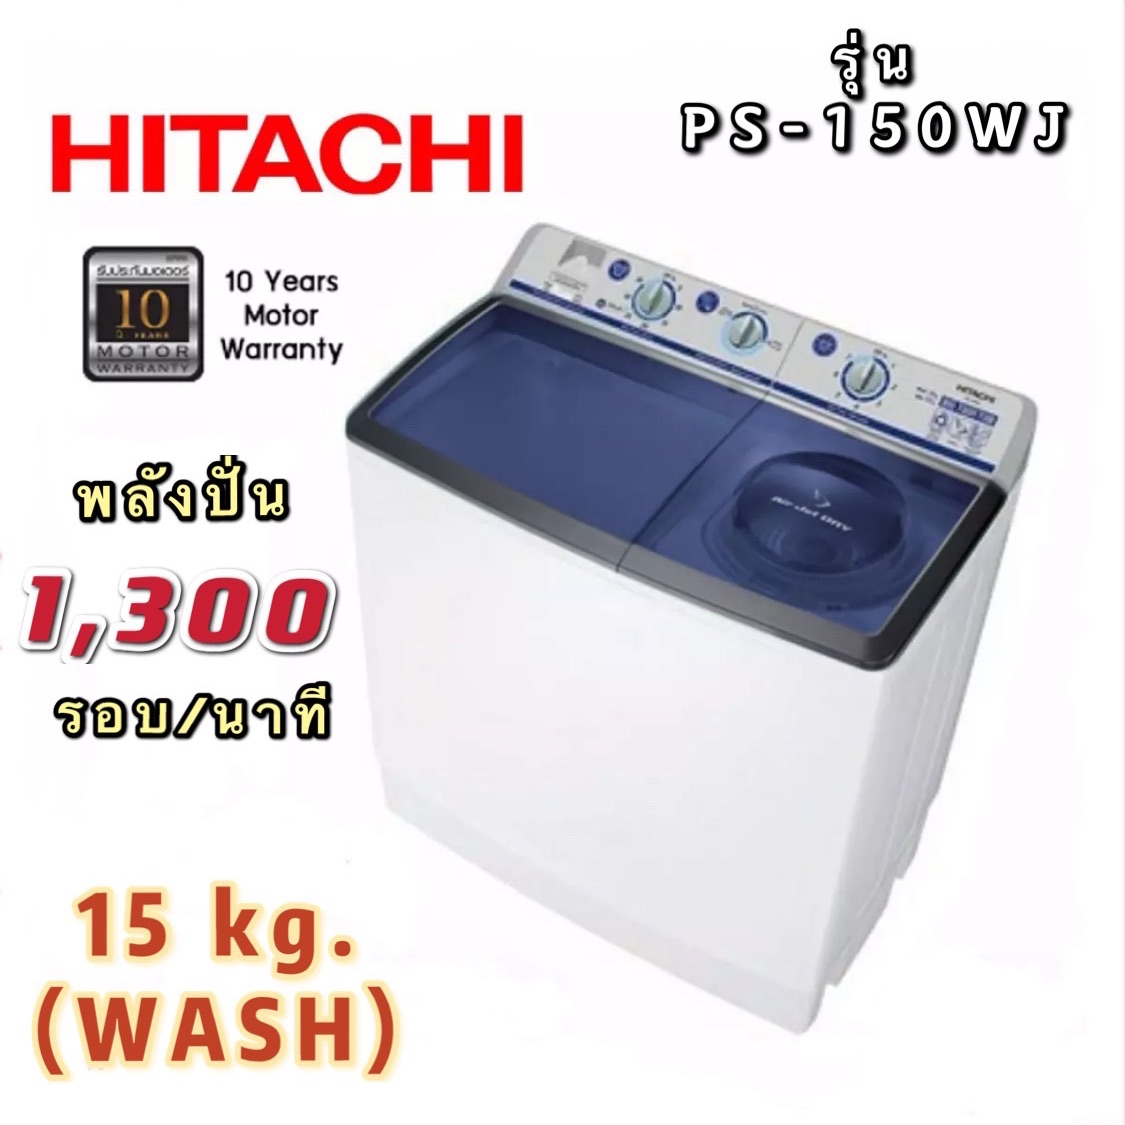 ? เครื่องซักผ้า Hitachi ขนาด 15 กก. รุ่น PS-150WJ?